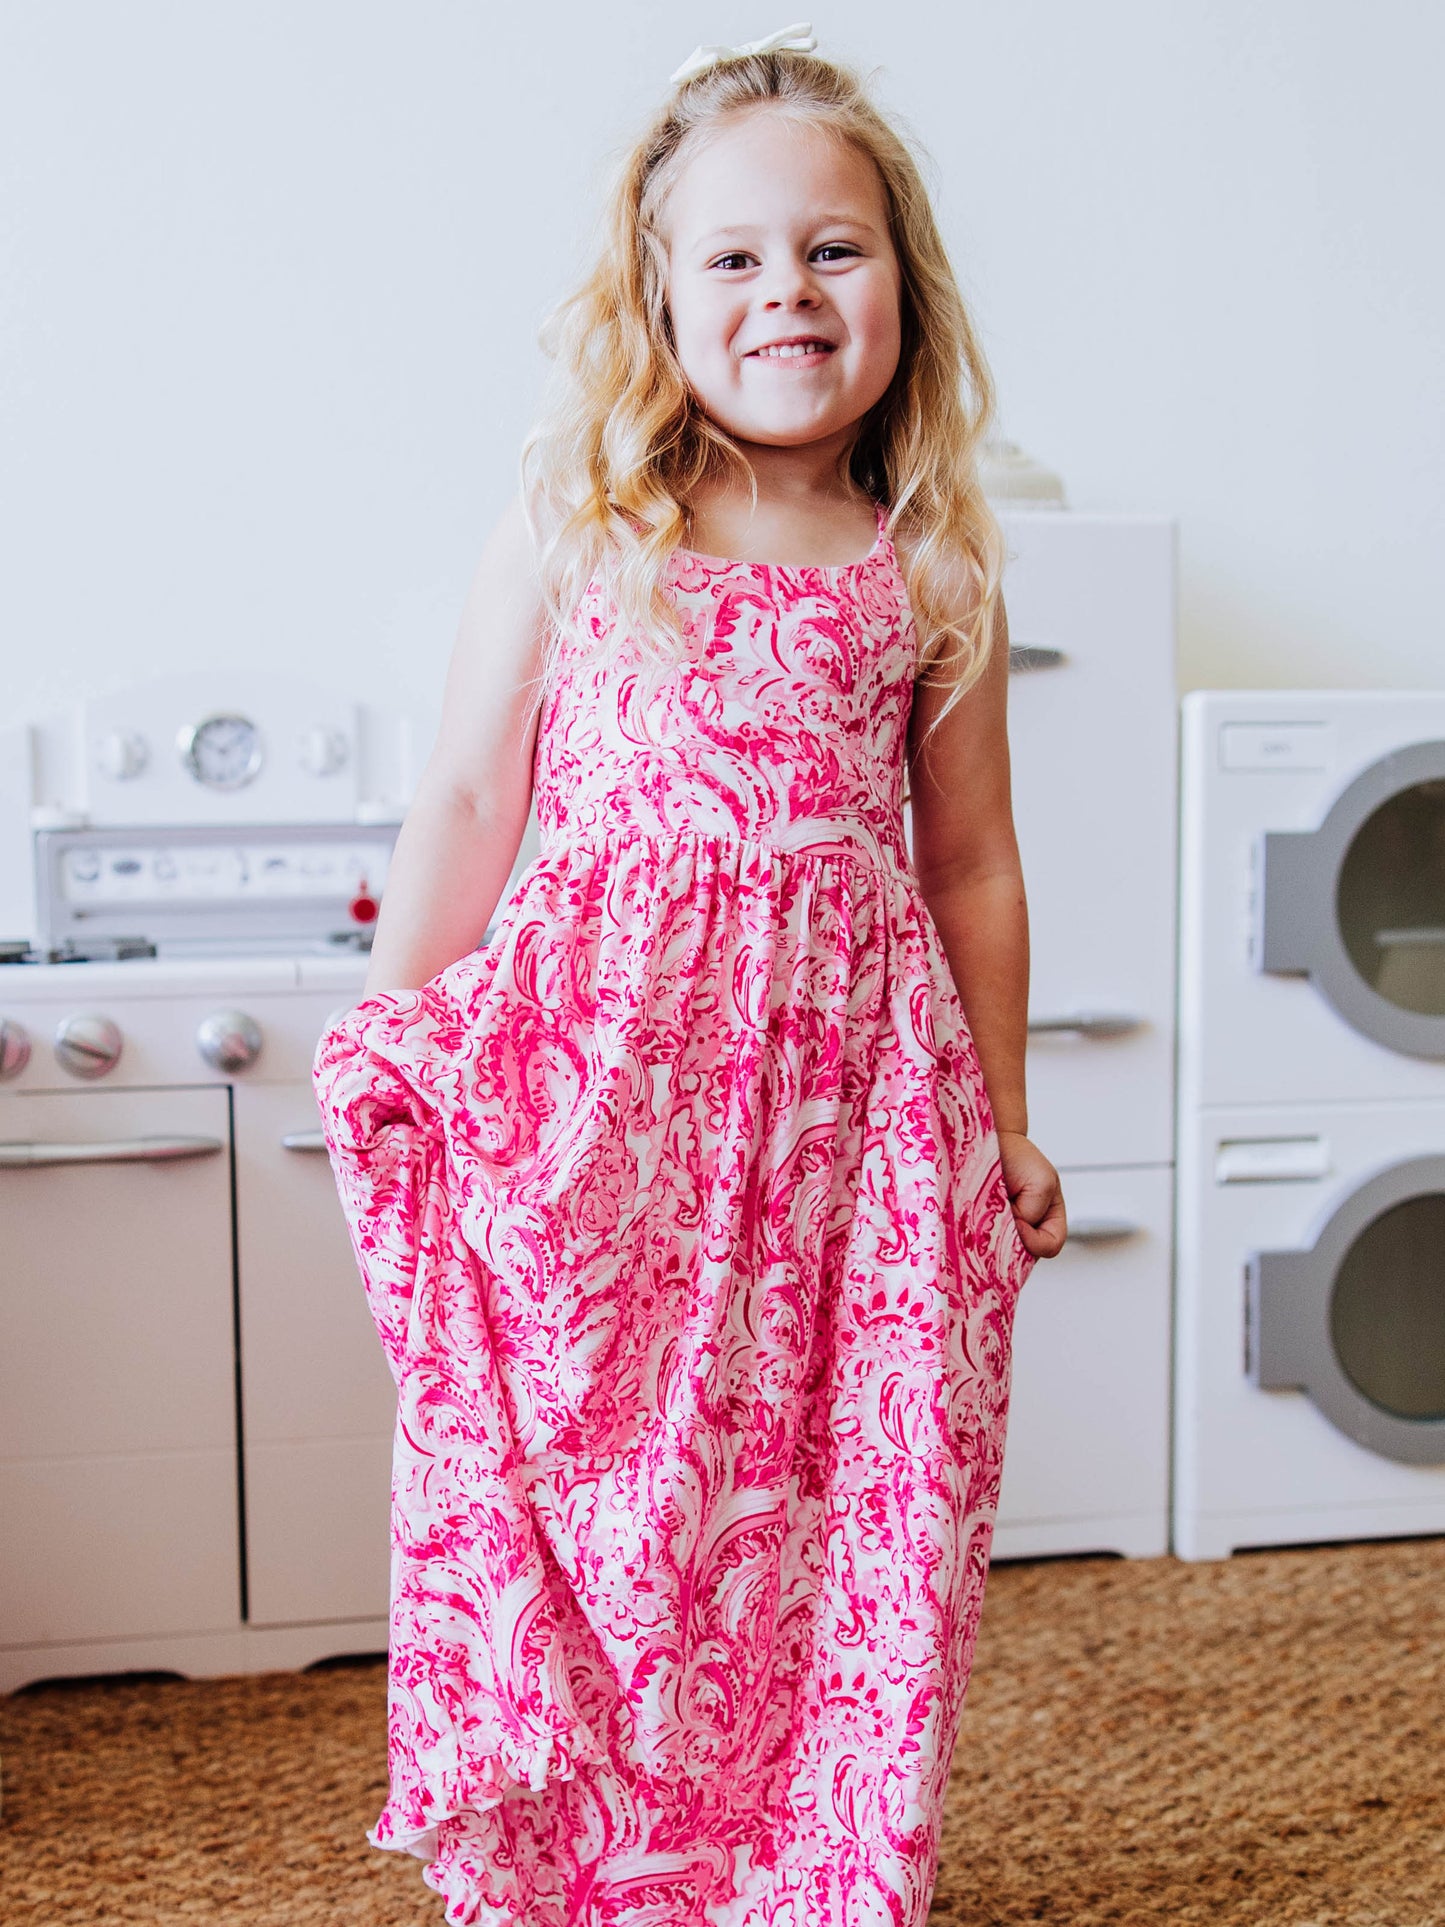 Maxi Play Dress - Pink Paisley